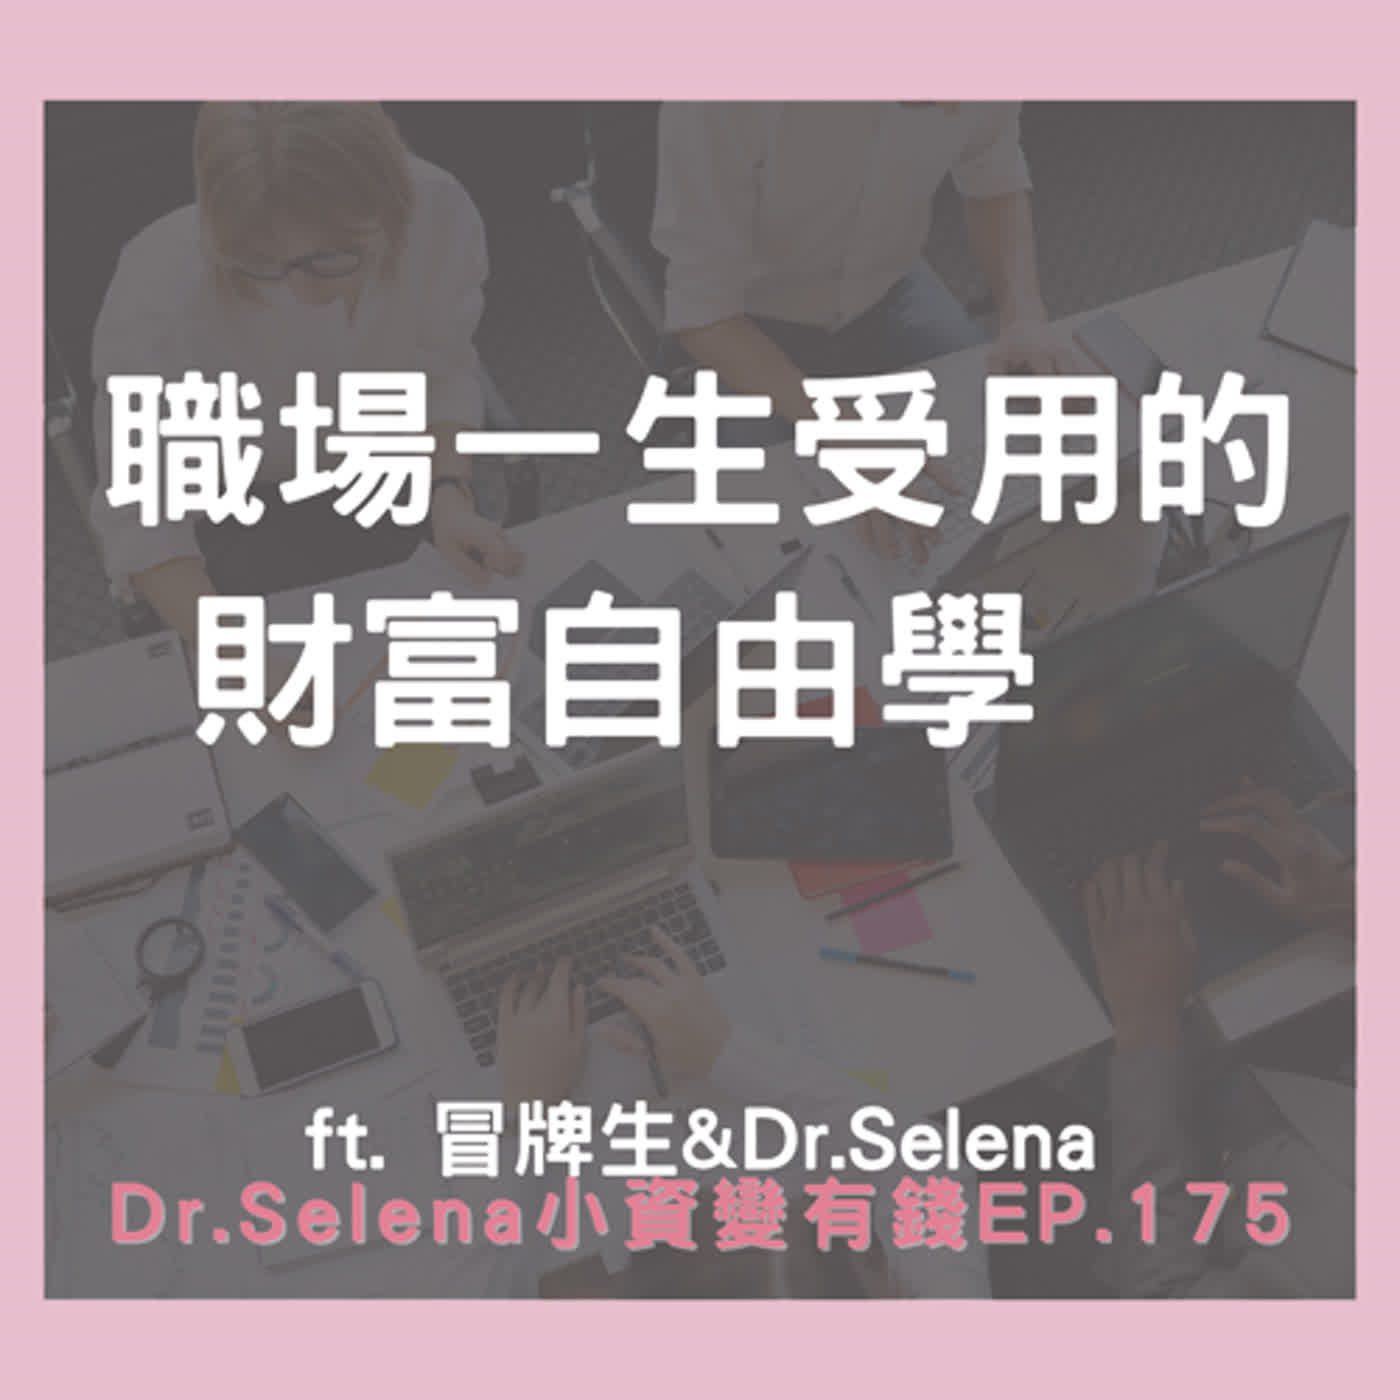 一生受用的財富自由學 ft. 冒牌生&Dr.Selena 